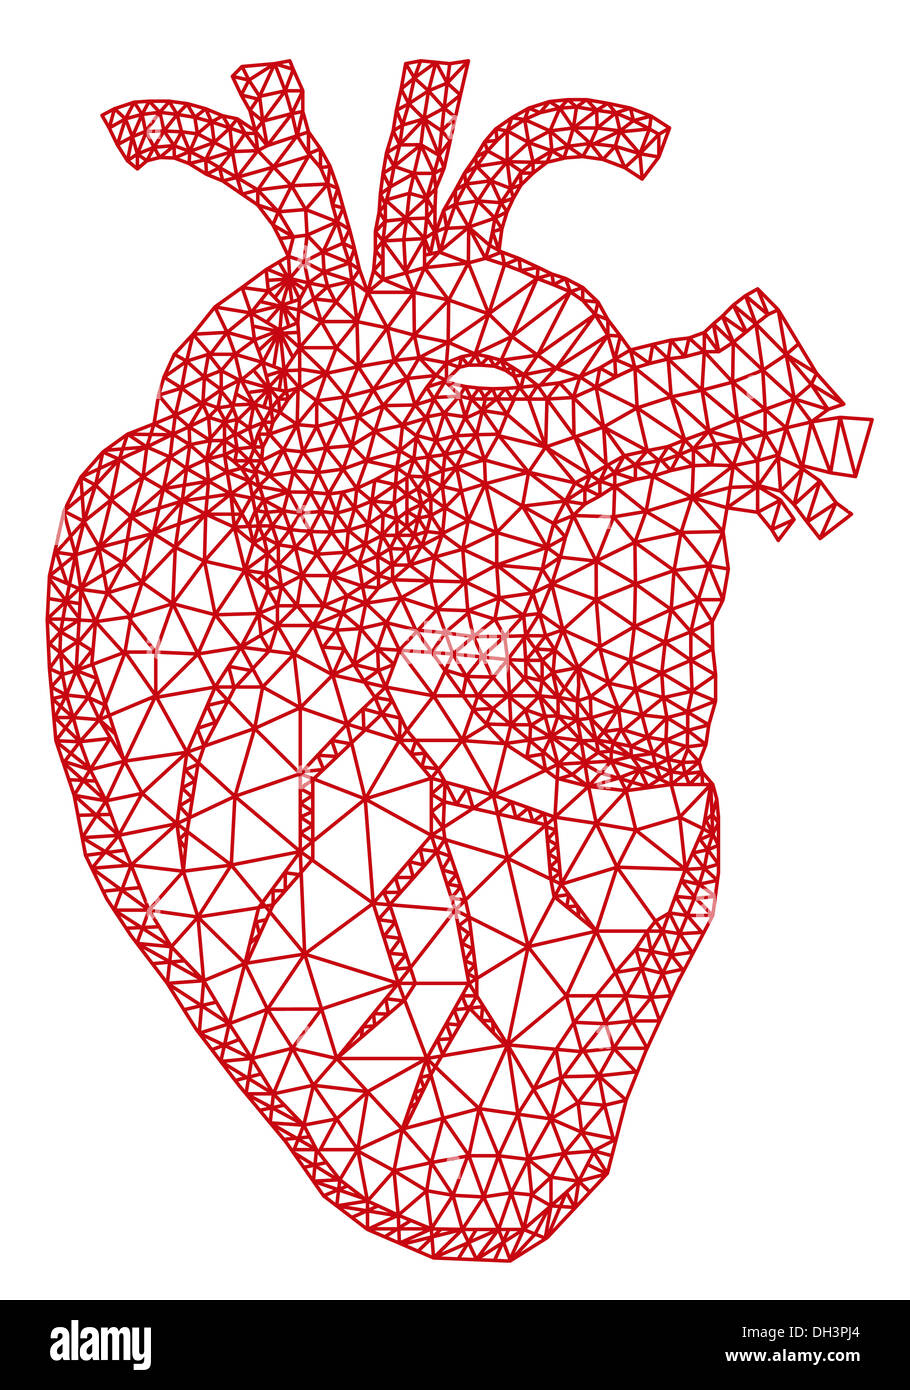 Résumé rouge coeur humain avec l'engrènement géométrique Banque D'Images